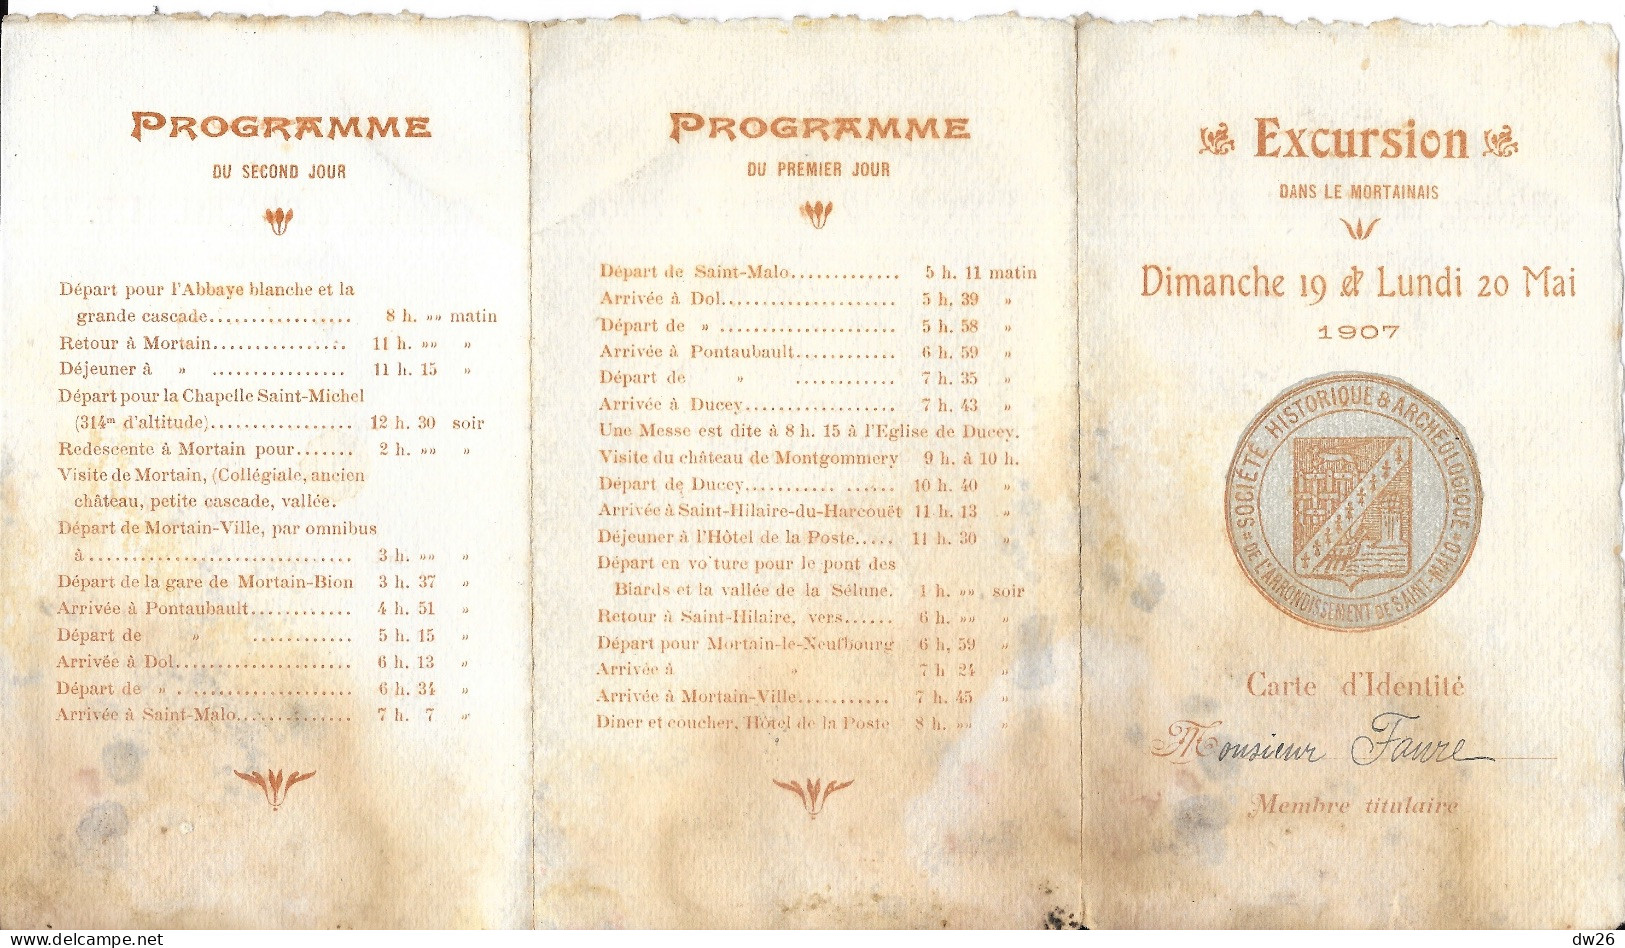 Membre Société Historique & Archéologique Saint-Malo - Excursion Dans Le Mortainais (Manche) Mai 1907 - Cartes De Membre